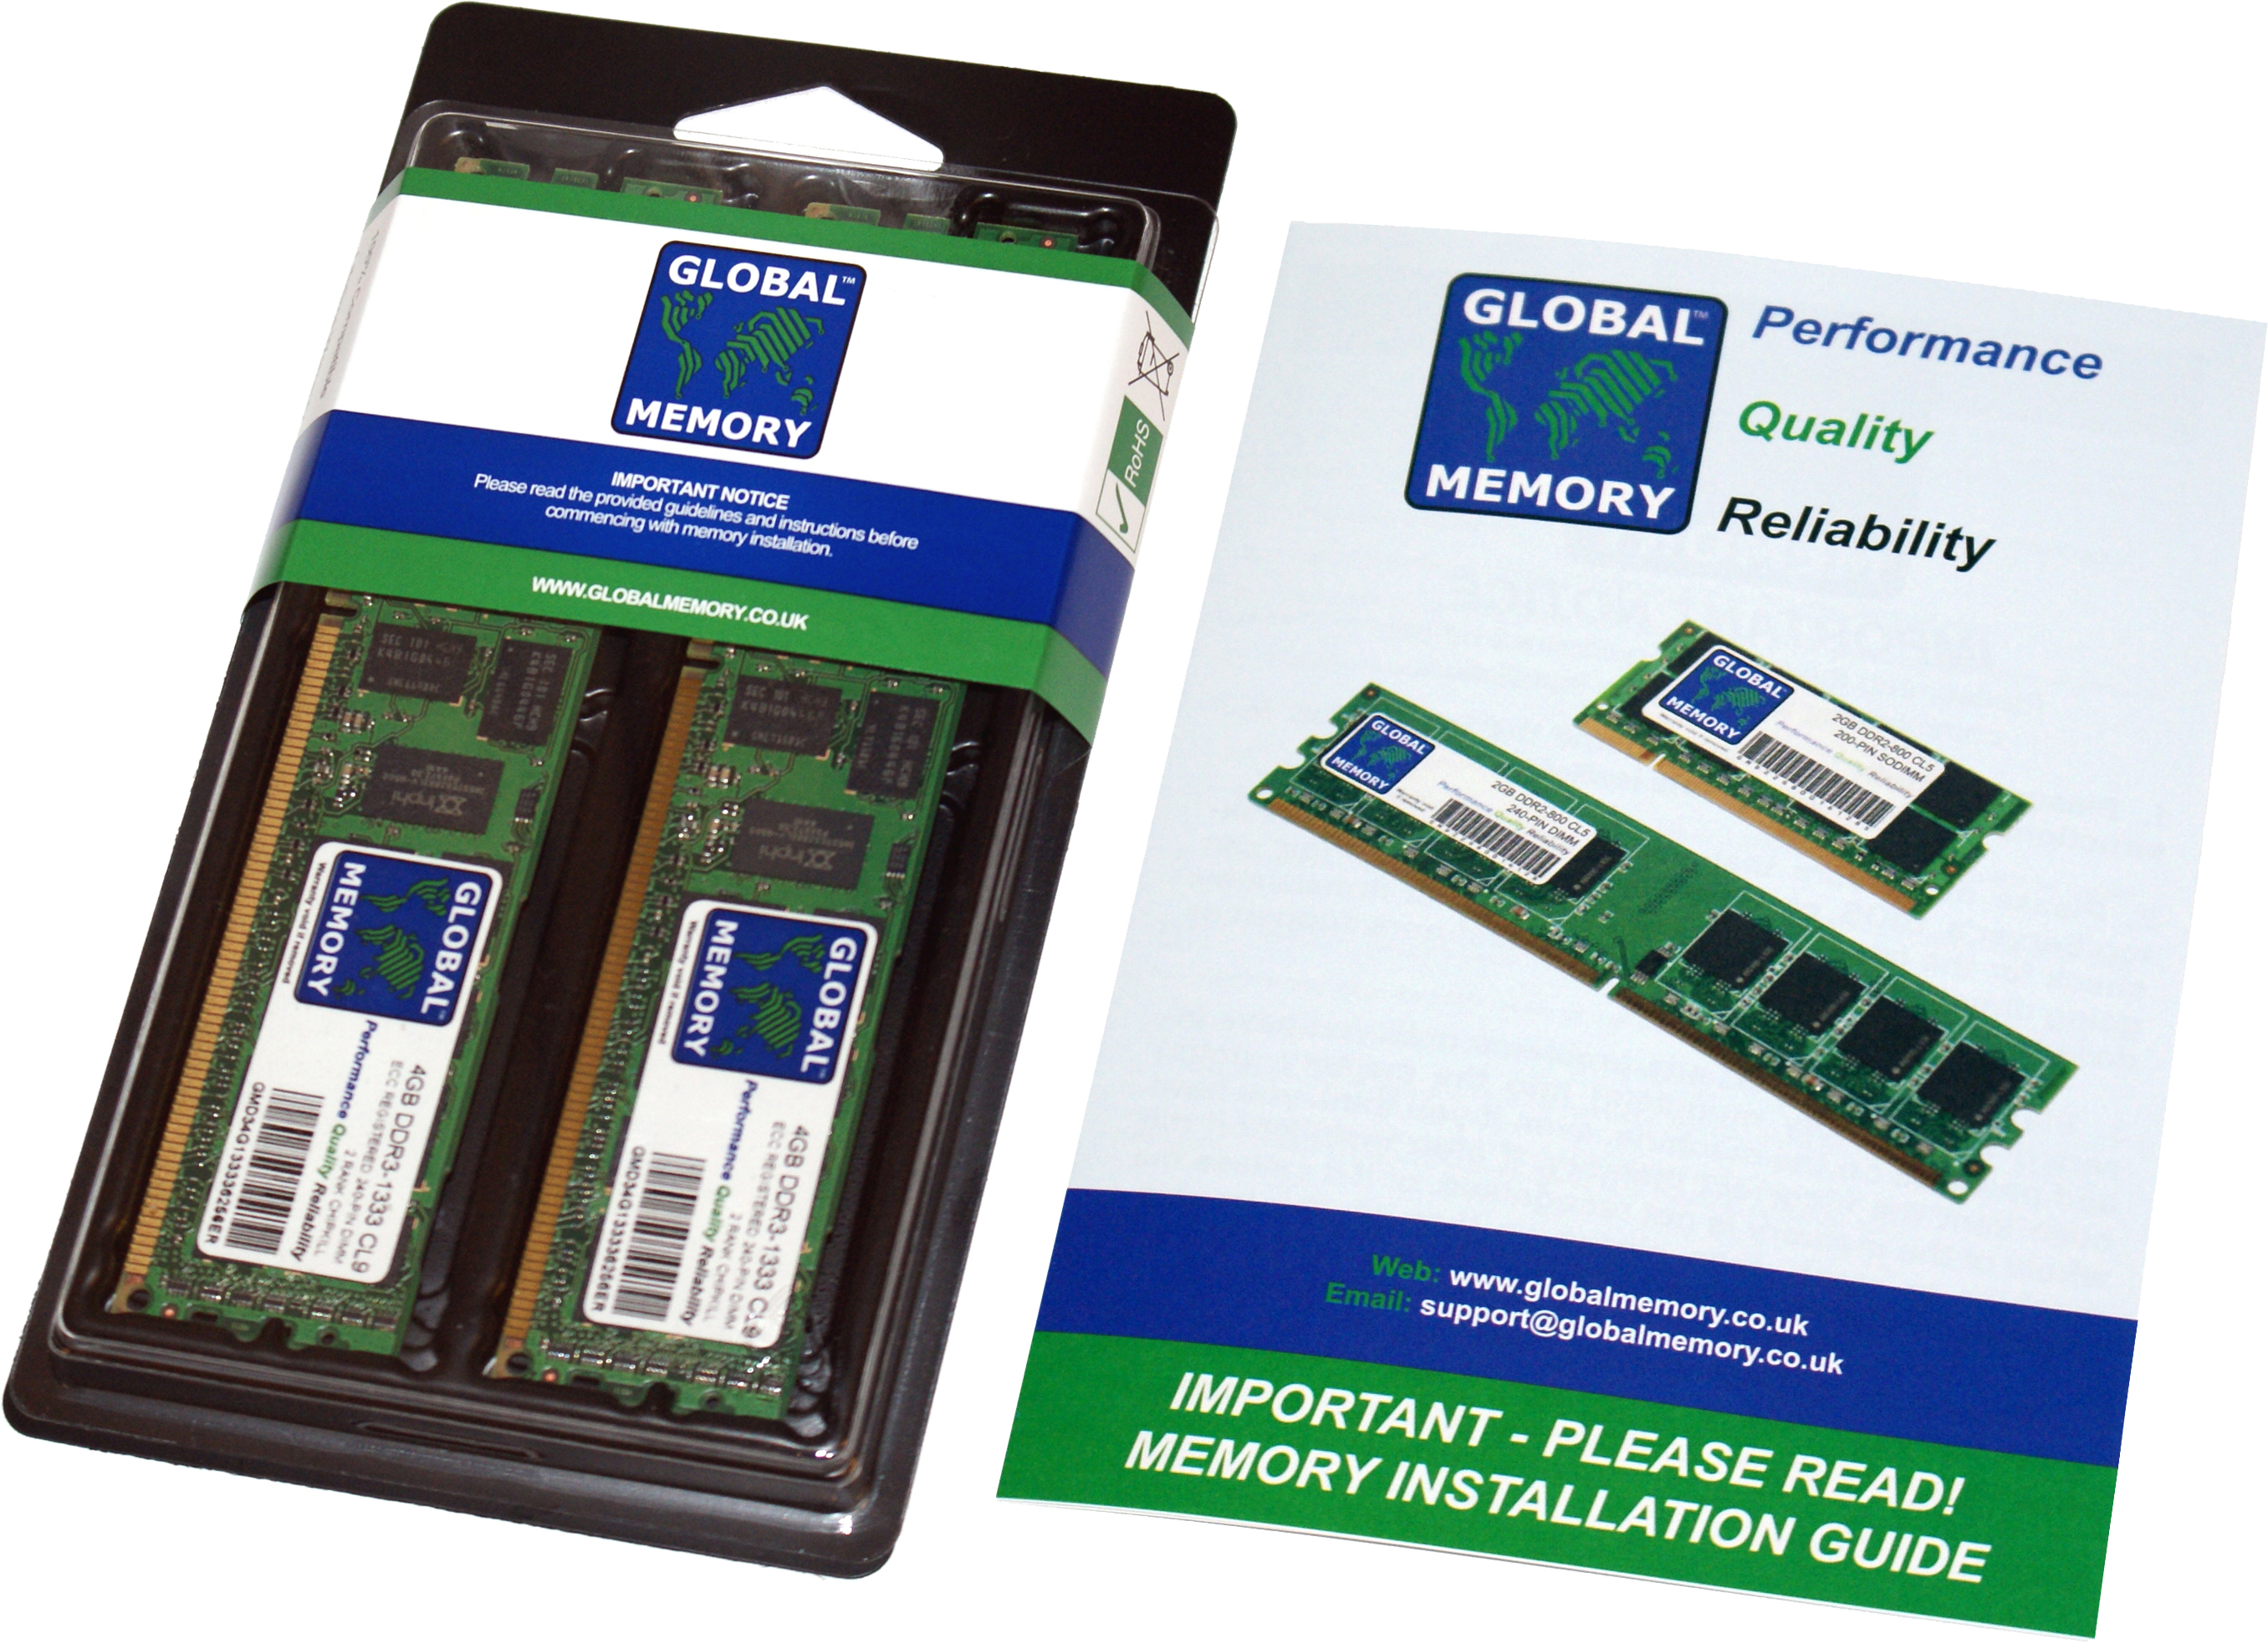 128GB (2 x 64GB) DDR4 2666MHz PC4-21300 288-PIN LOAD REDUCED ECC REGISTERED DIMM (LRDIMM) MEMORY RAM KIT FOR FUJITSU SERVERS/WORKSTATIONS (8 RANK KIT CHIPKILL)